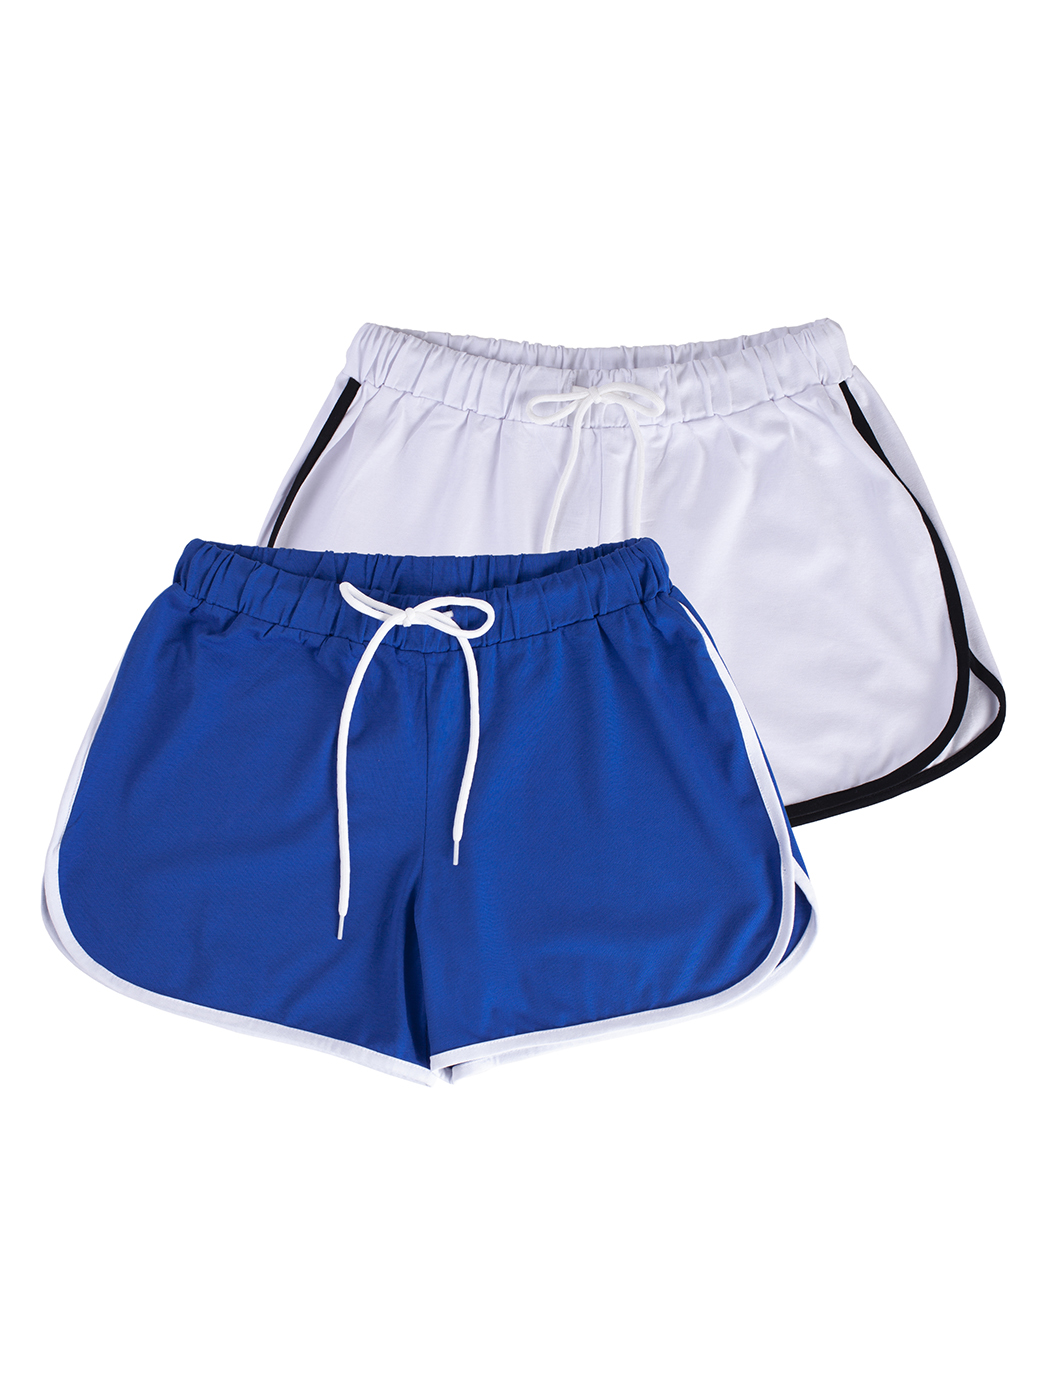 Cпортивные шорты женские Lunarable ksrt002-2_ синие XL